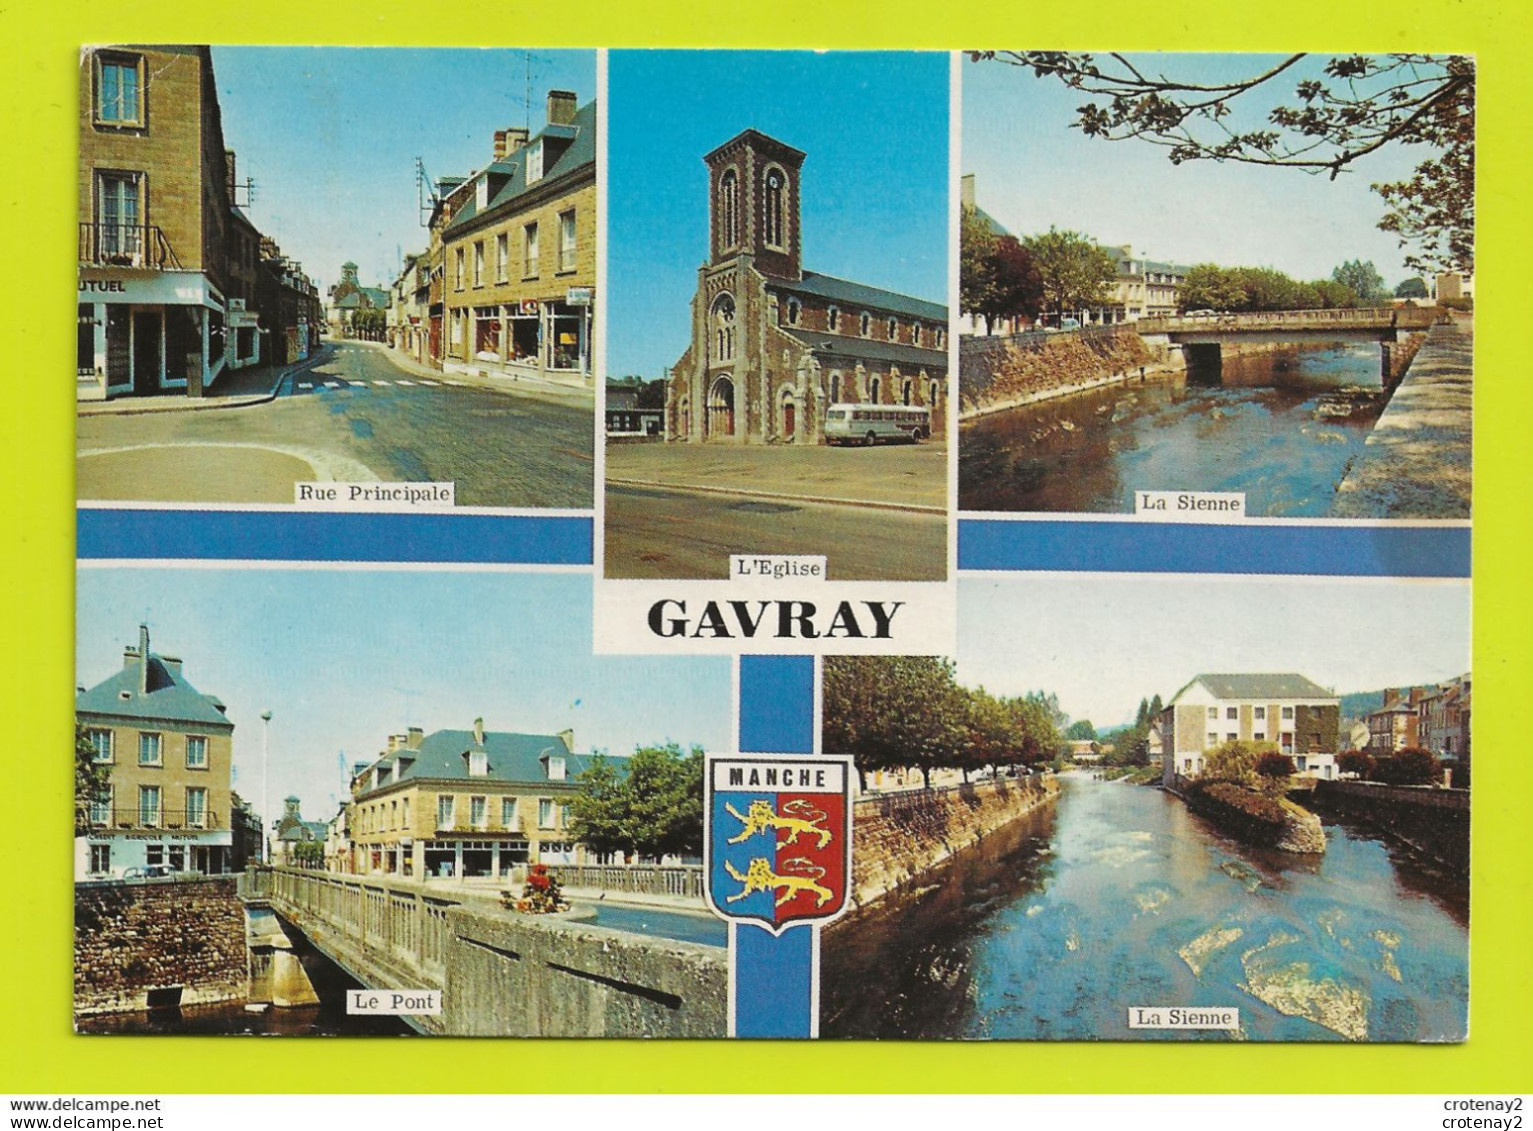 50 GAVRAY Vers Villedieu N°101 En 1985 Rue Principale Eglise BUS Ancien Crédit Agricole La Sienne Pont - Villedieu